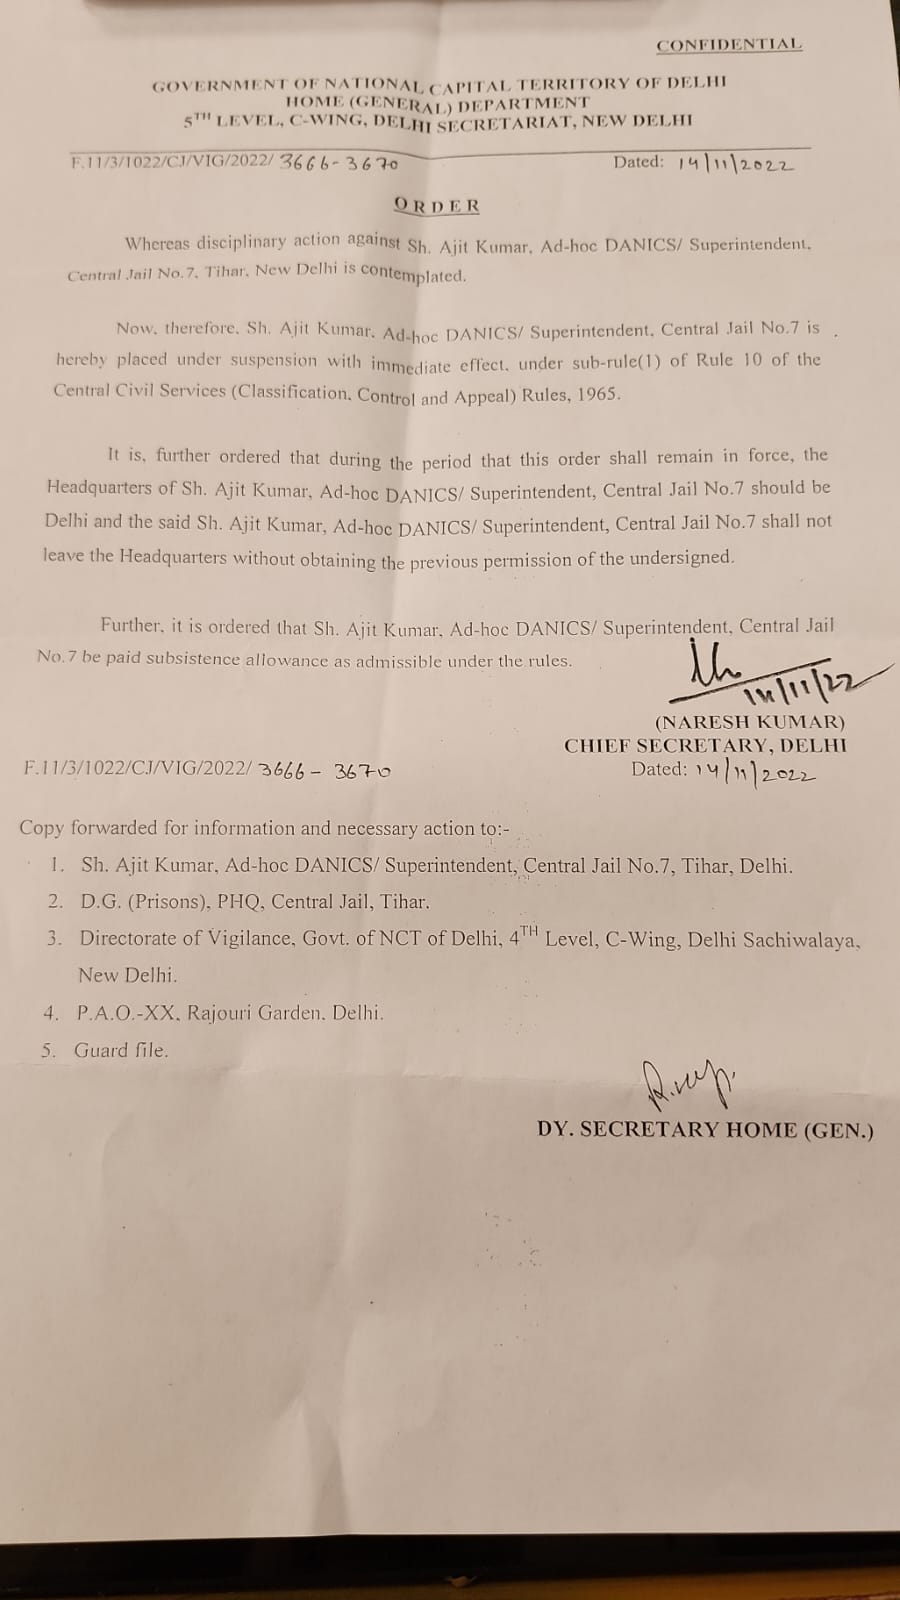 दिल्ली सरकार के मुख्य सचिव नरेश कुमार ने निलंबन का दिया आदेश